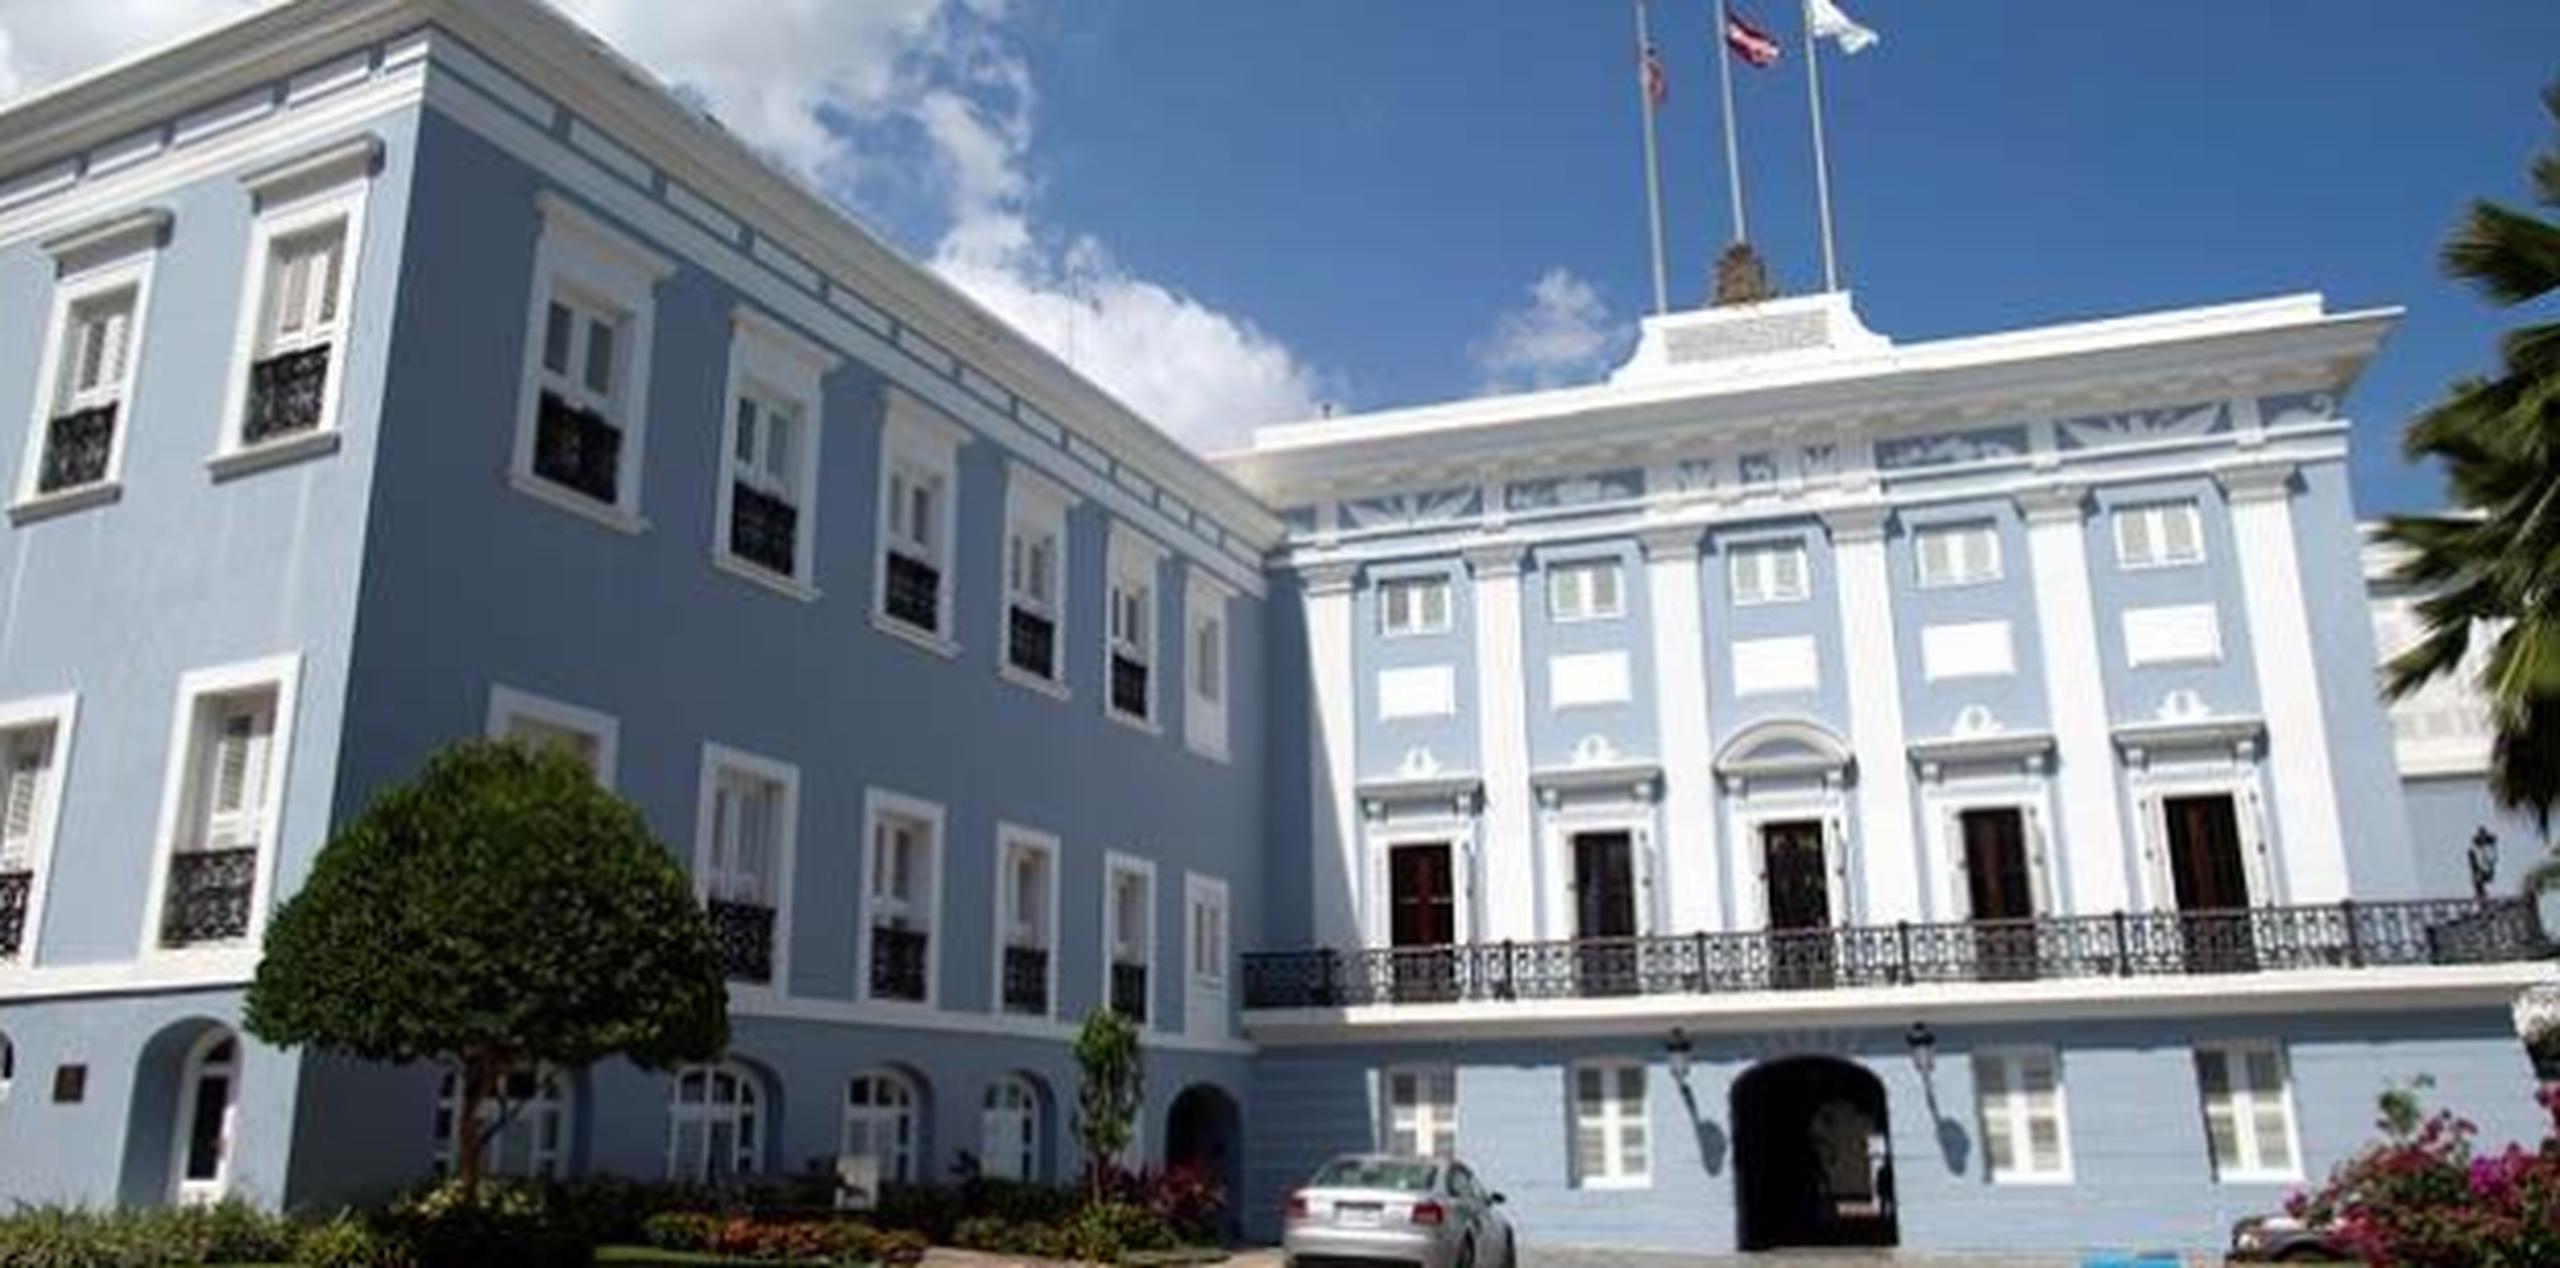 Tras una reunión con la secretaria de la Gobernación, Grace Santana Balado, Castro Agis presentó su carta de renuncia efectiva el 23 de septiembre, se indicó. (Archivo)